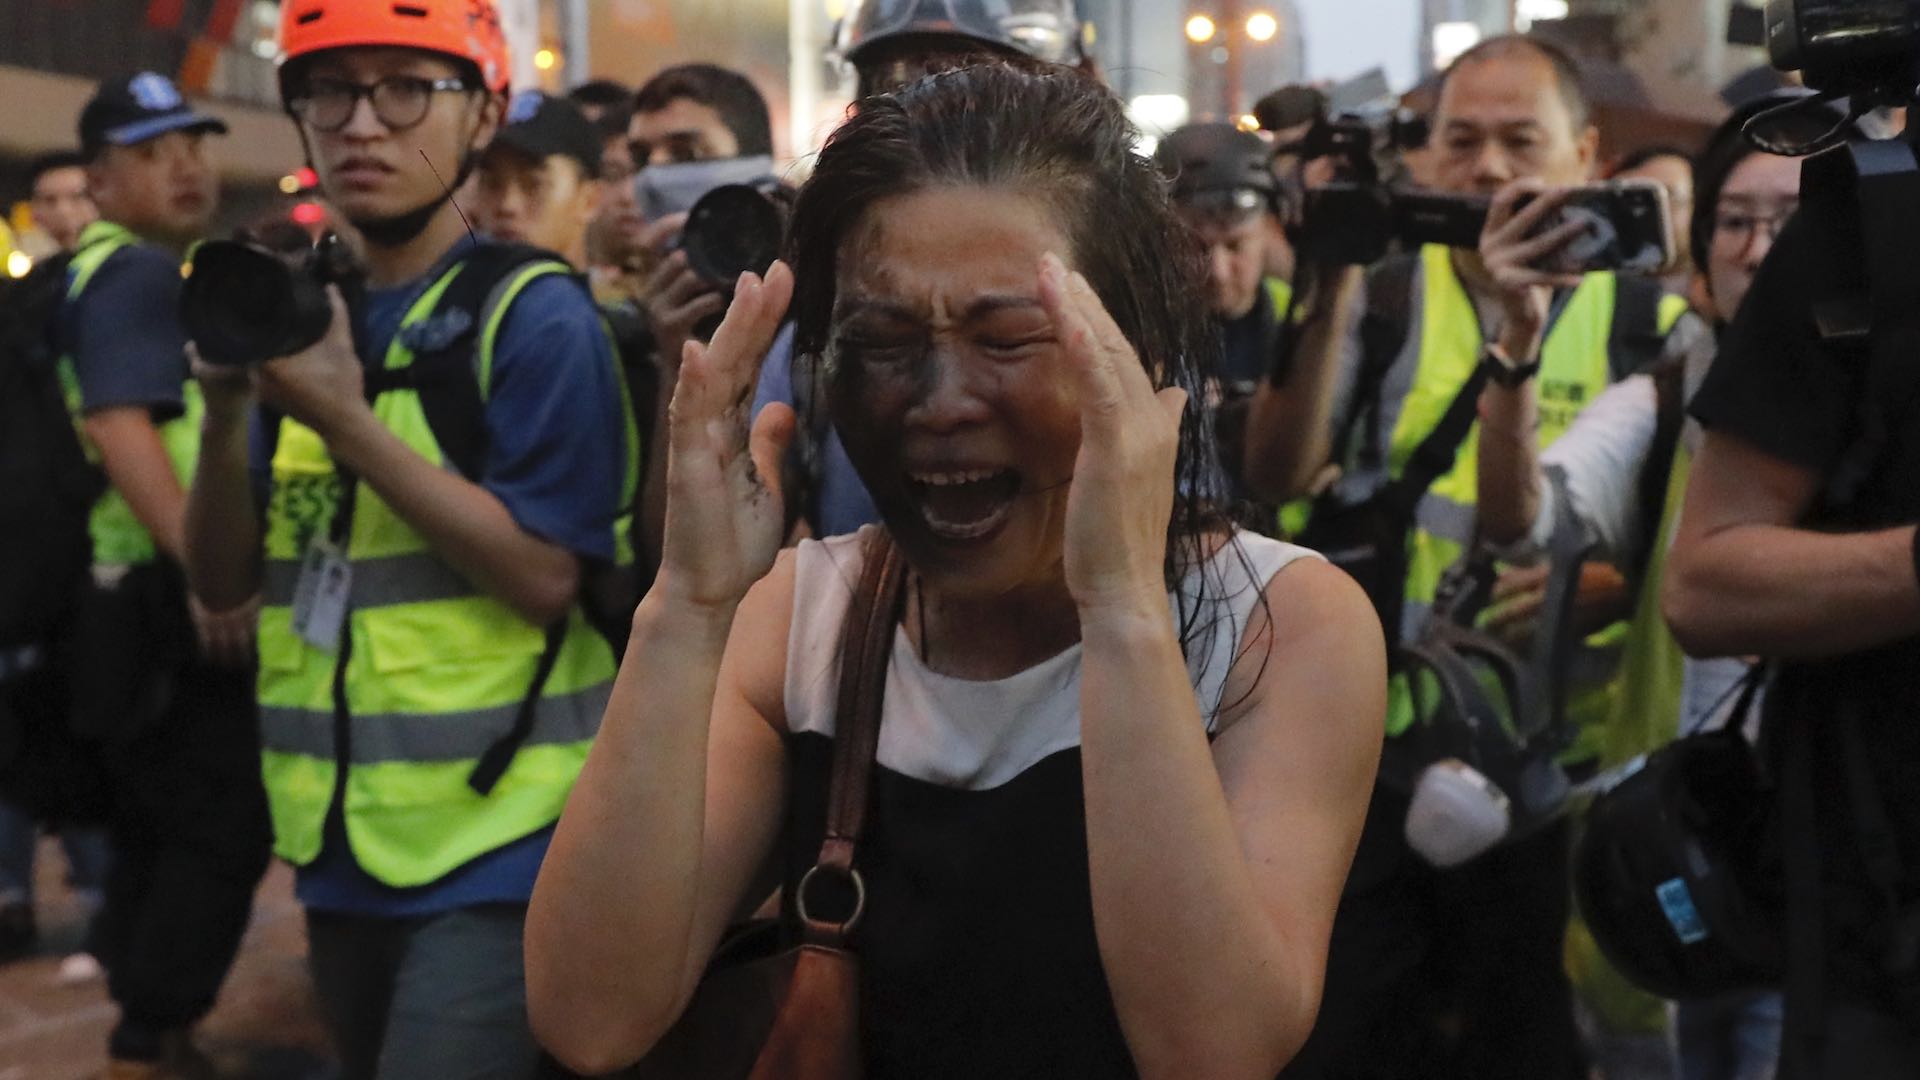 El presidente chino amenaza a Hong Kong: "Quien intente actividades separatistas será aplastado"